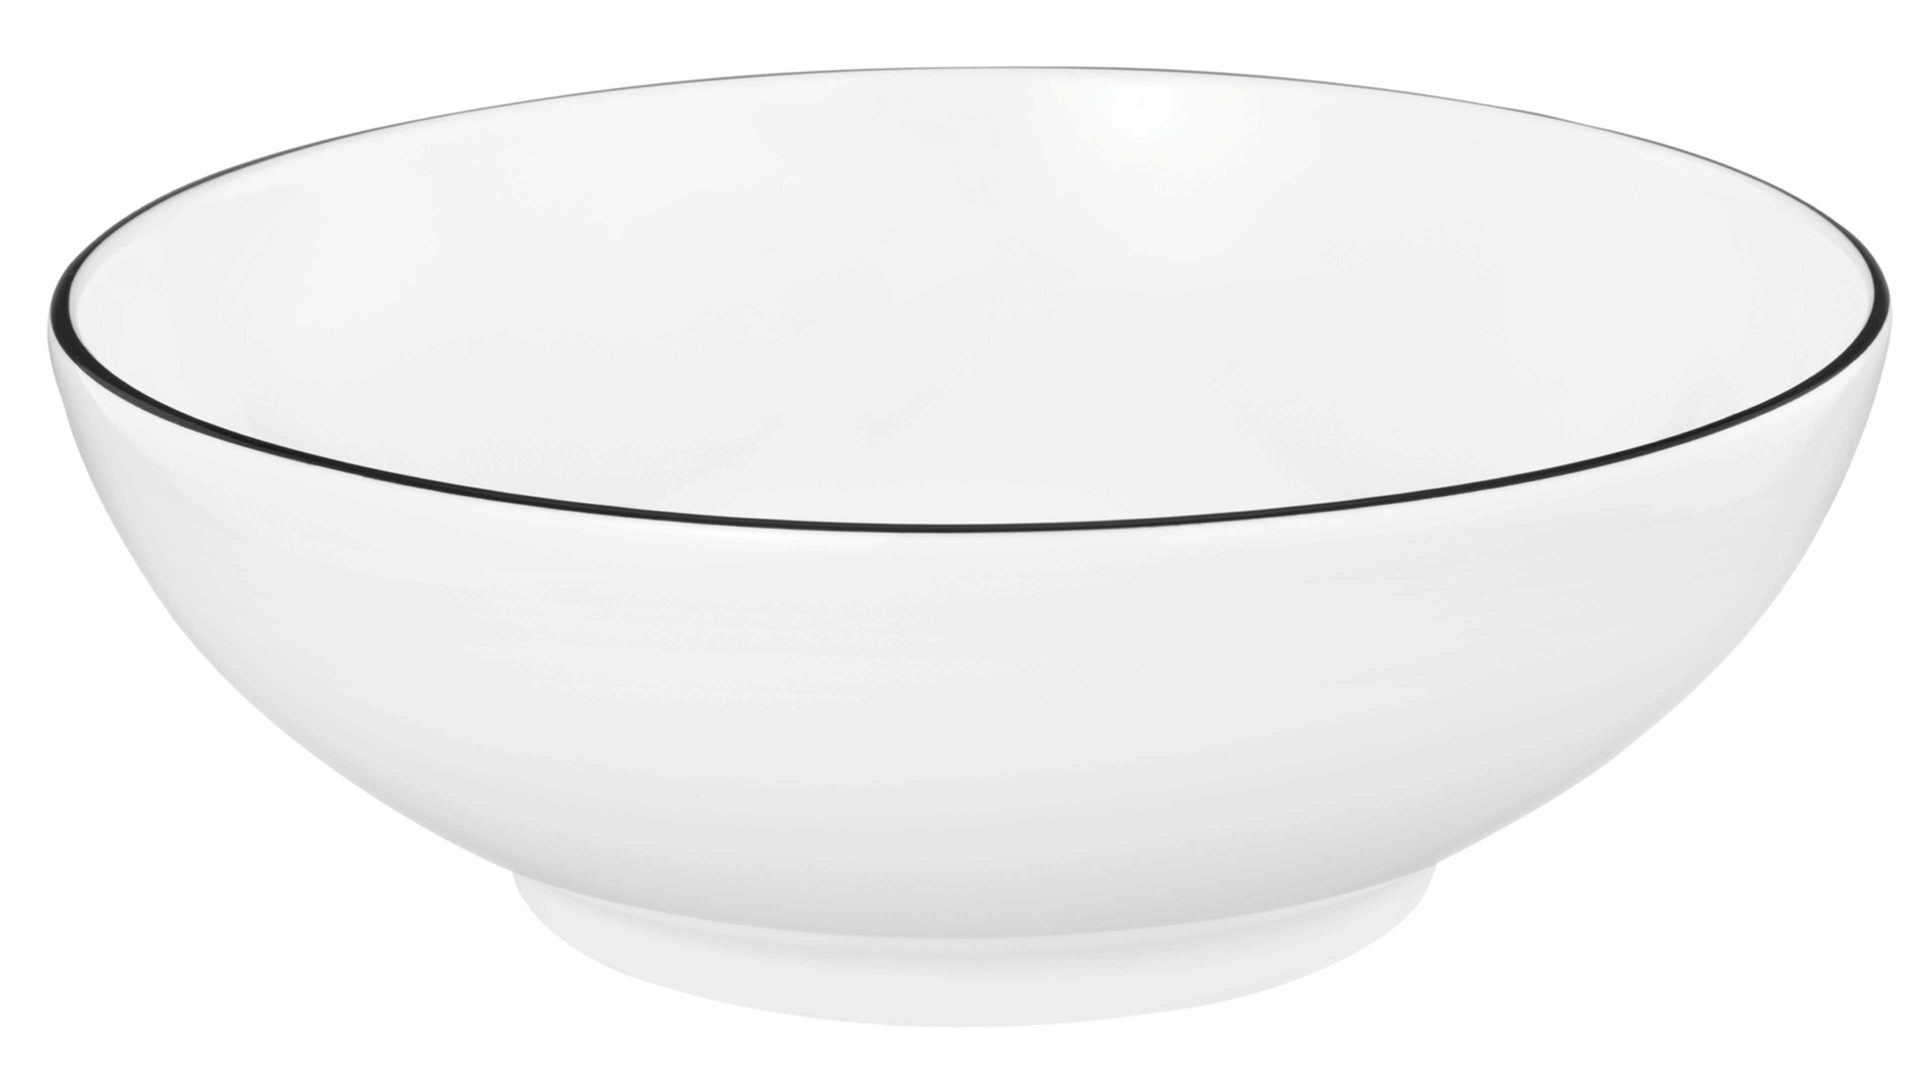 Müslischale Seltmann aus Porzellan in Weiß Seltmann Lido – Dessertschale weißes Porzellan – Durchmesser ca. 15 cm